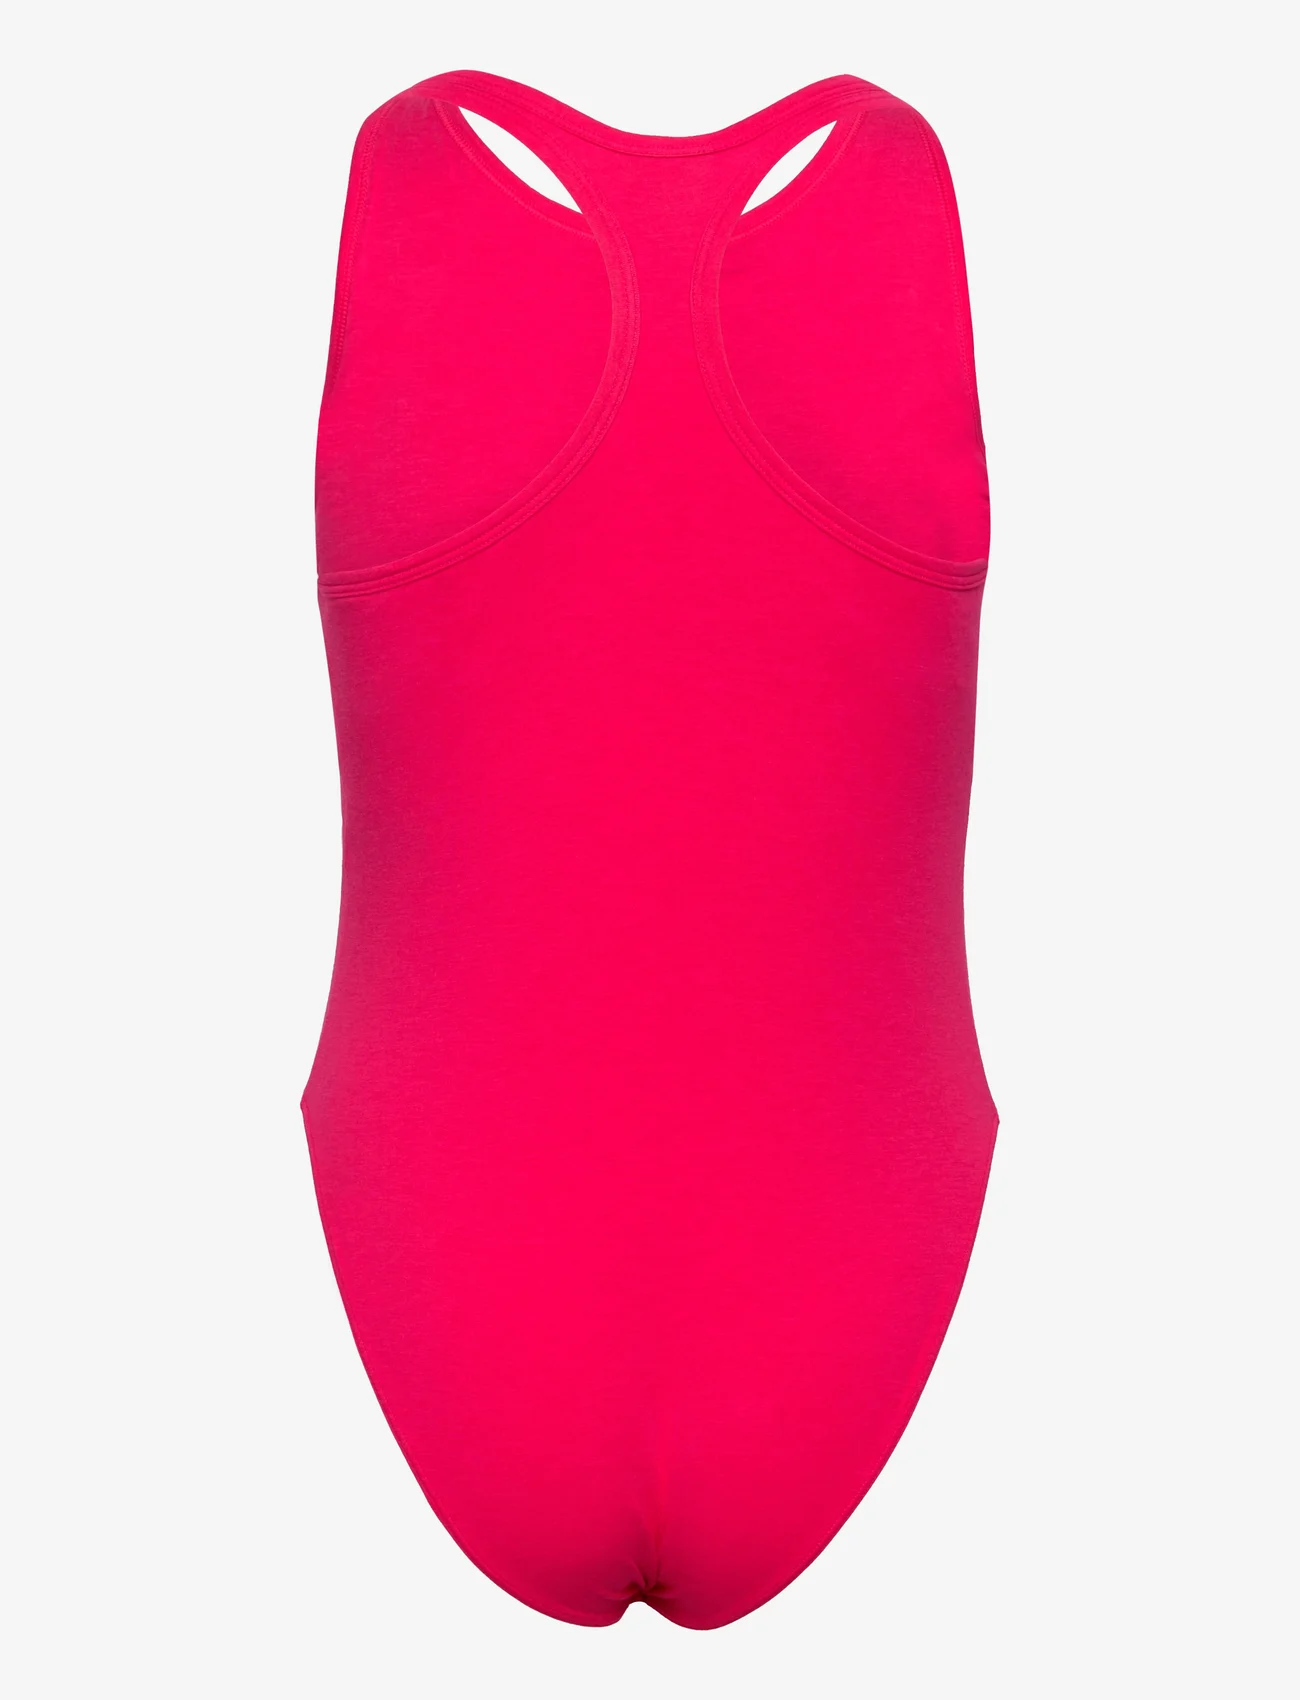 adidas Originals Underwear - Body - bodies - aubergine - 1